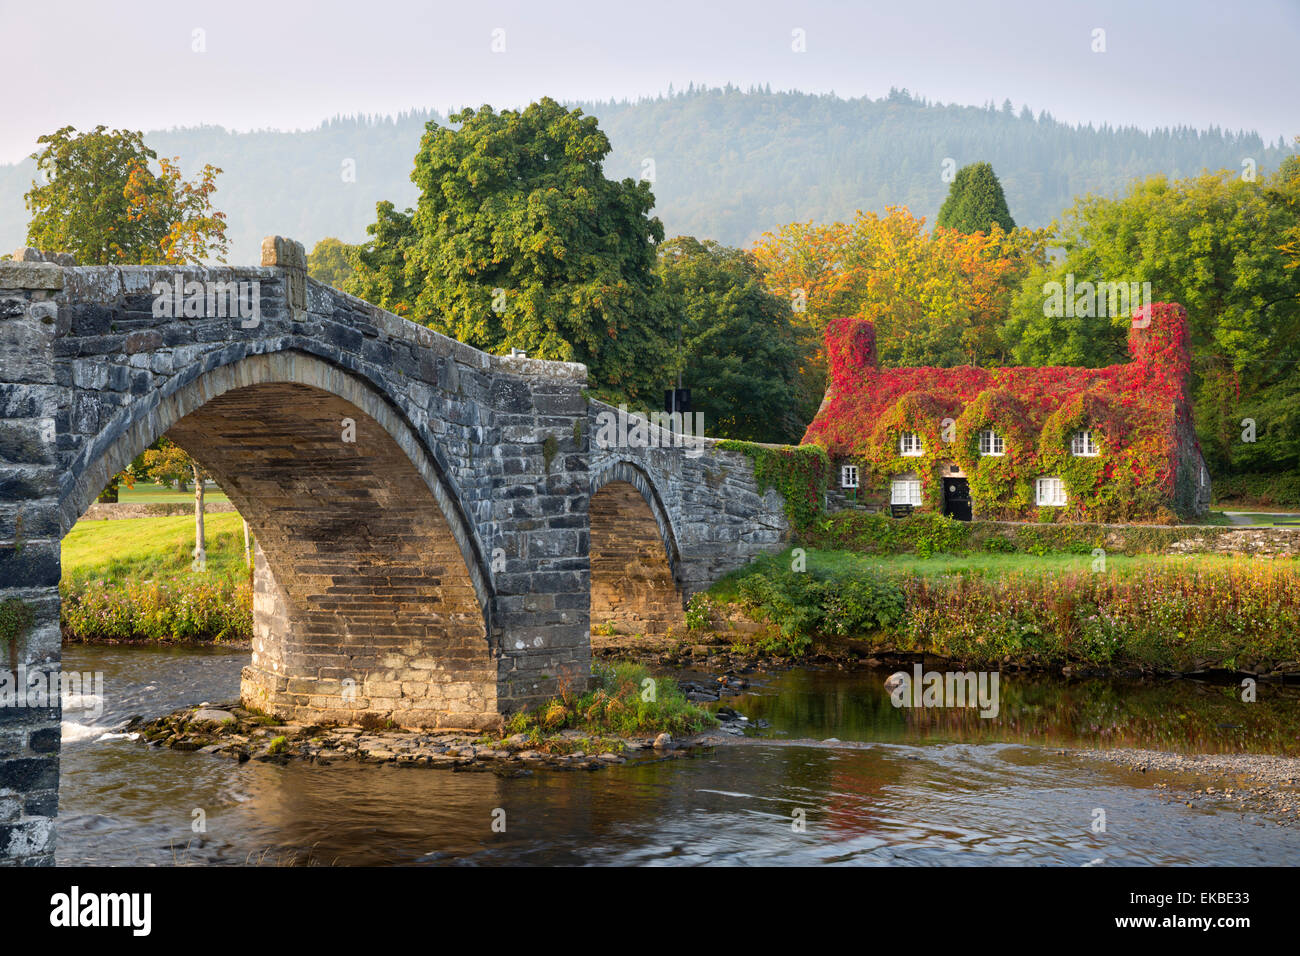 TU Hwnt i'r Bont Teestube und Pont Fawr (große Brücke) im Herbst, Romanum, Snowdonia, Conwy, Wales, Vereinigtes Königreich, Europa Stockfoto